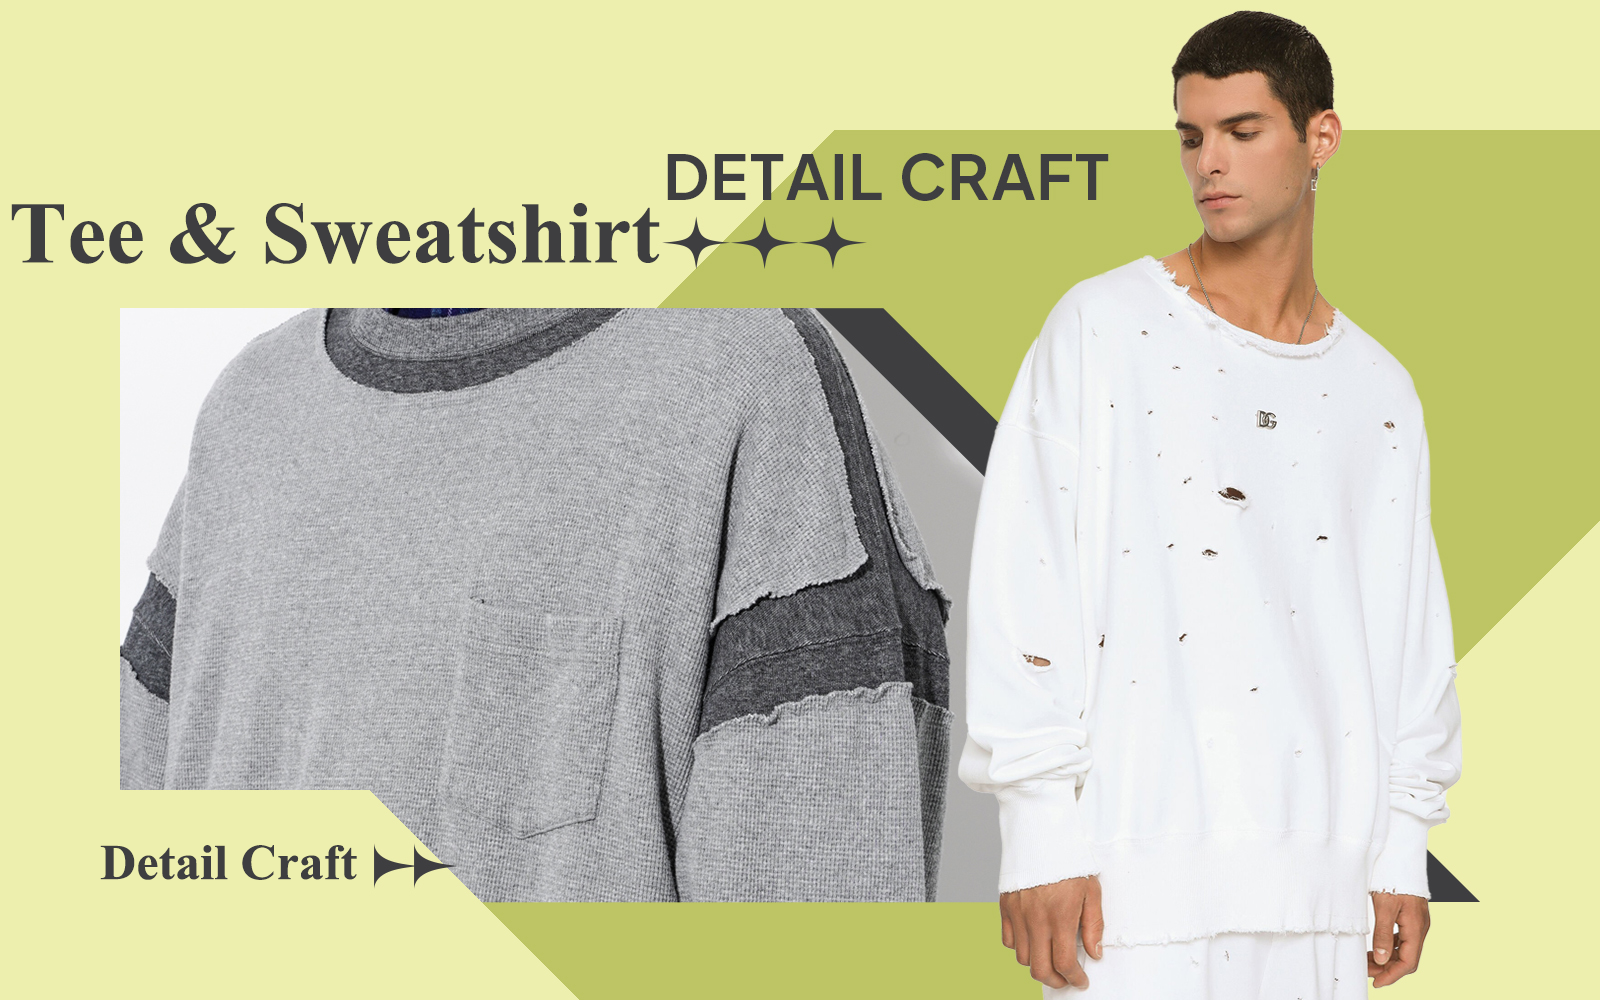 The Detail Trend for Men's Tee & Sweatshirt